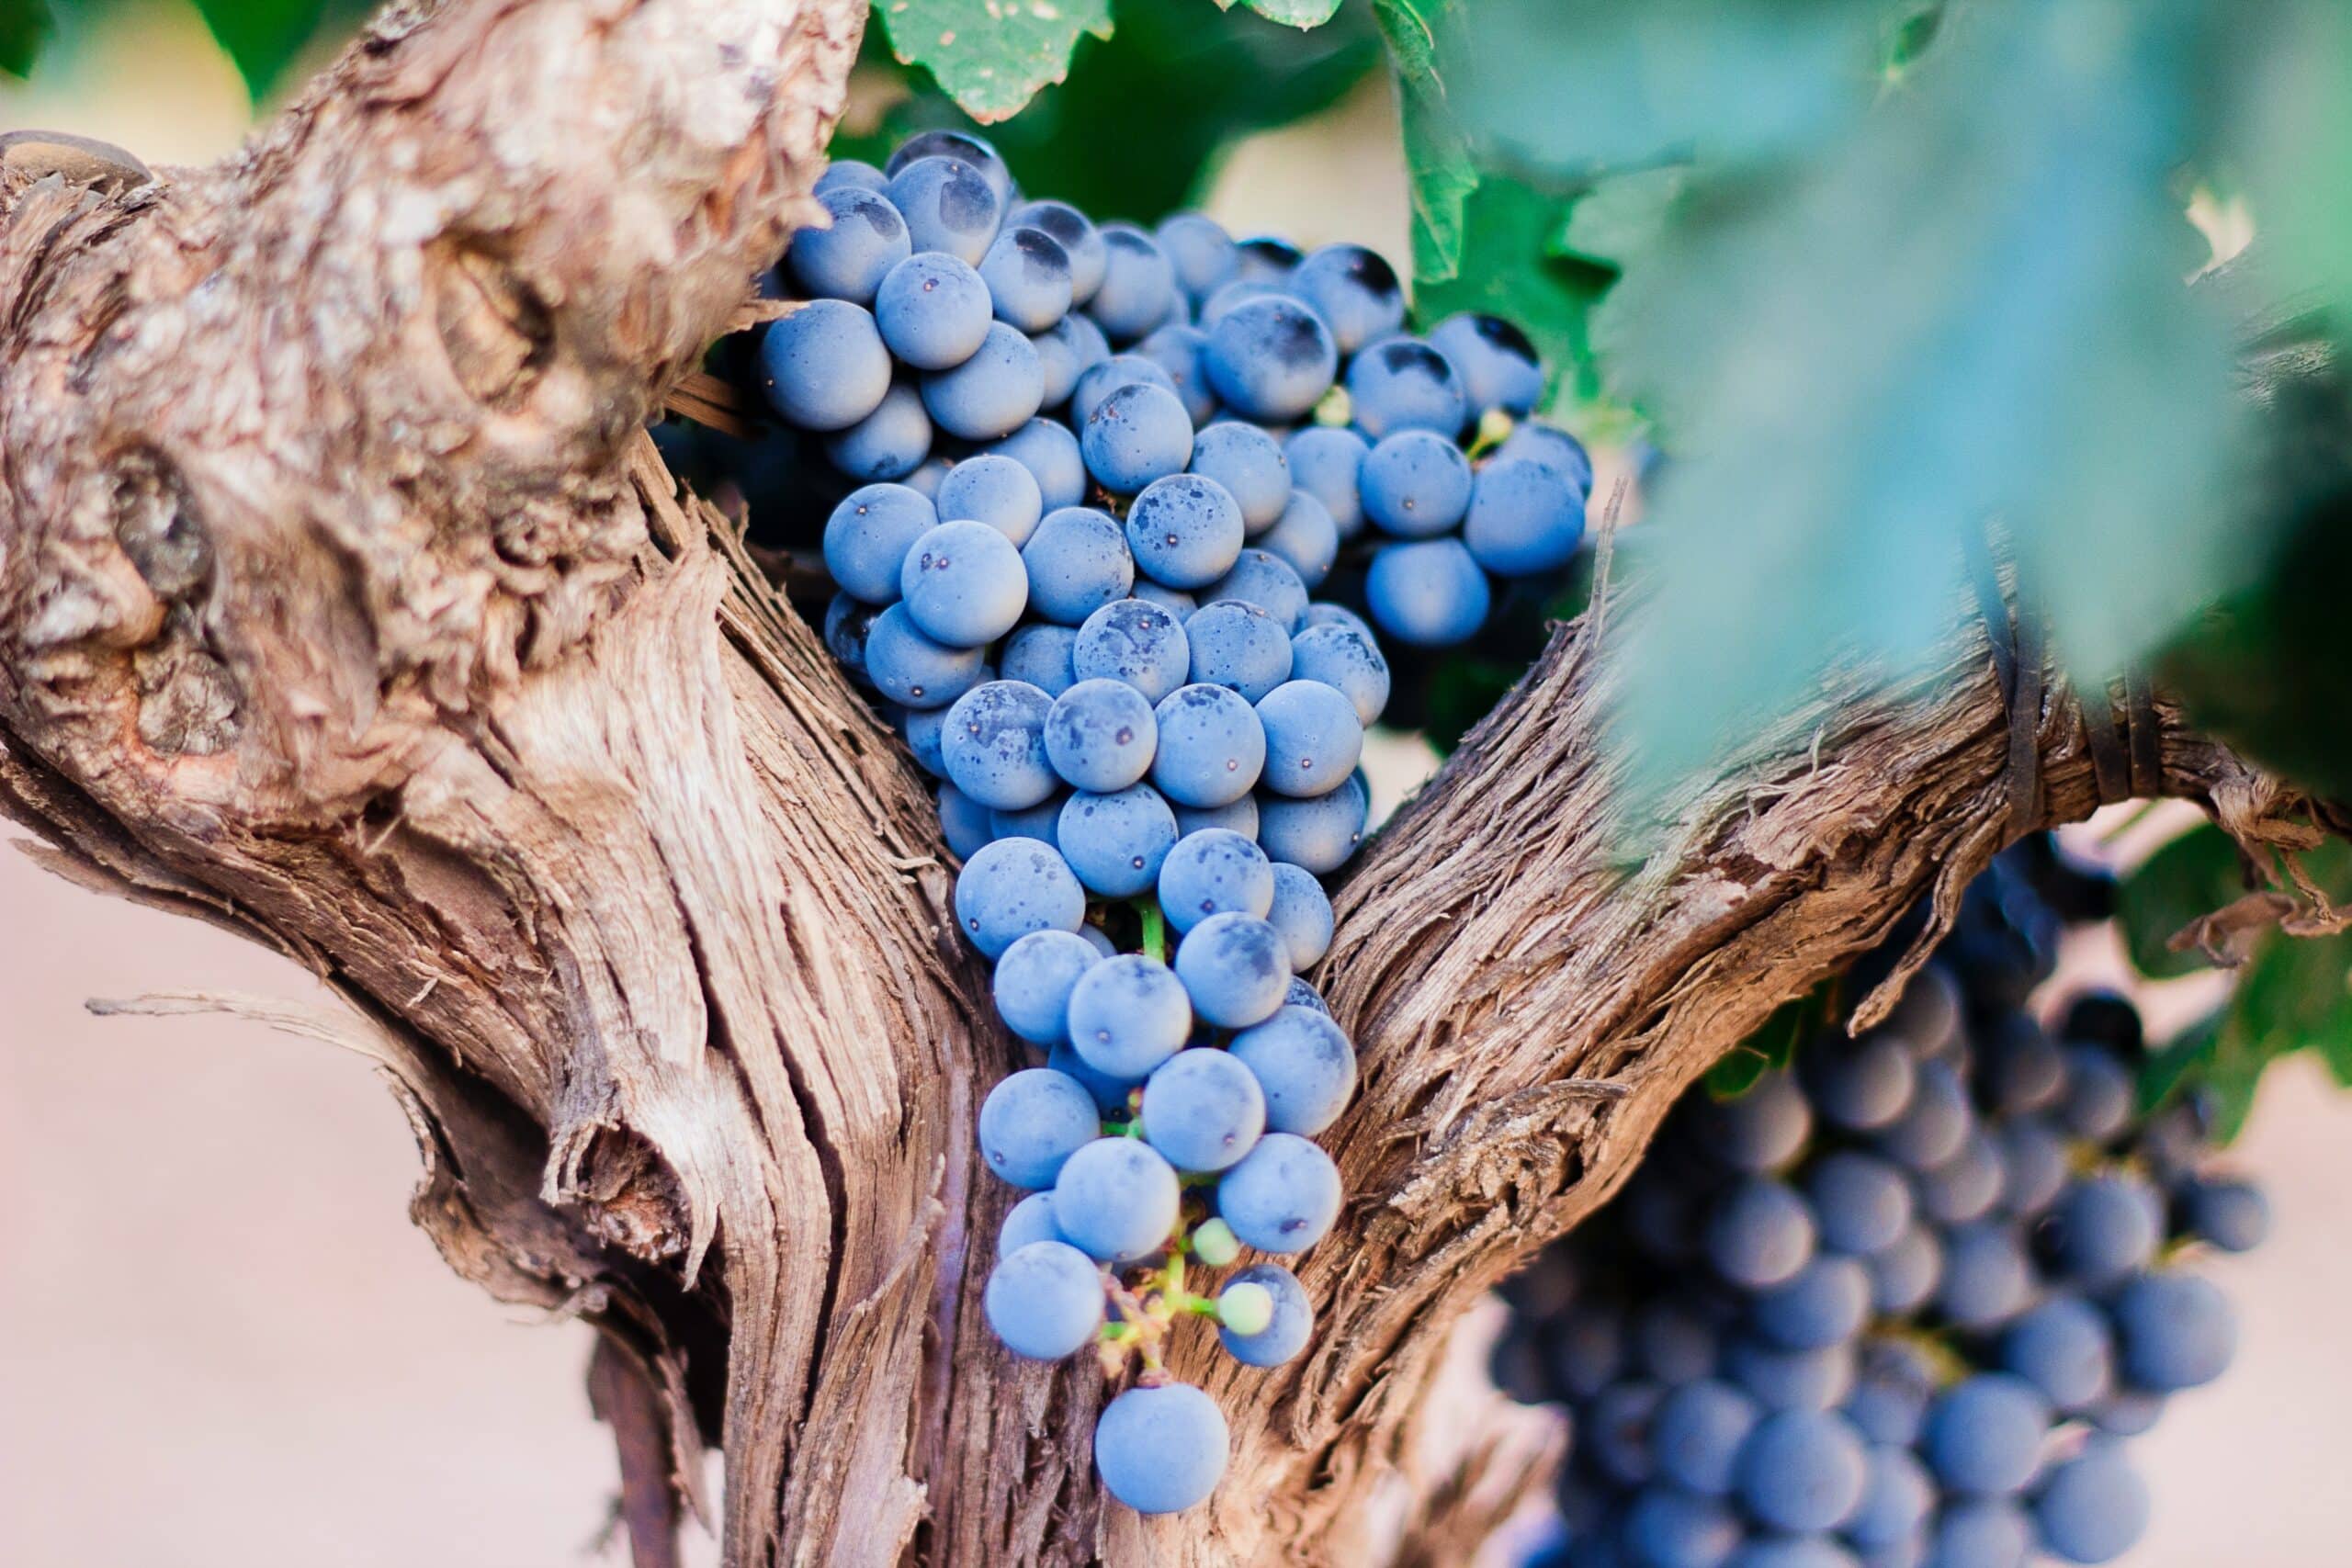 grapes on a tree | Photo by Nacho Domínguez Argenta on Unsplash